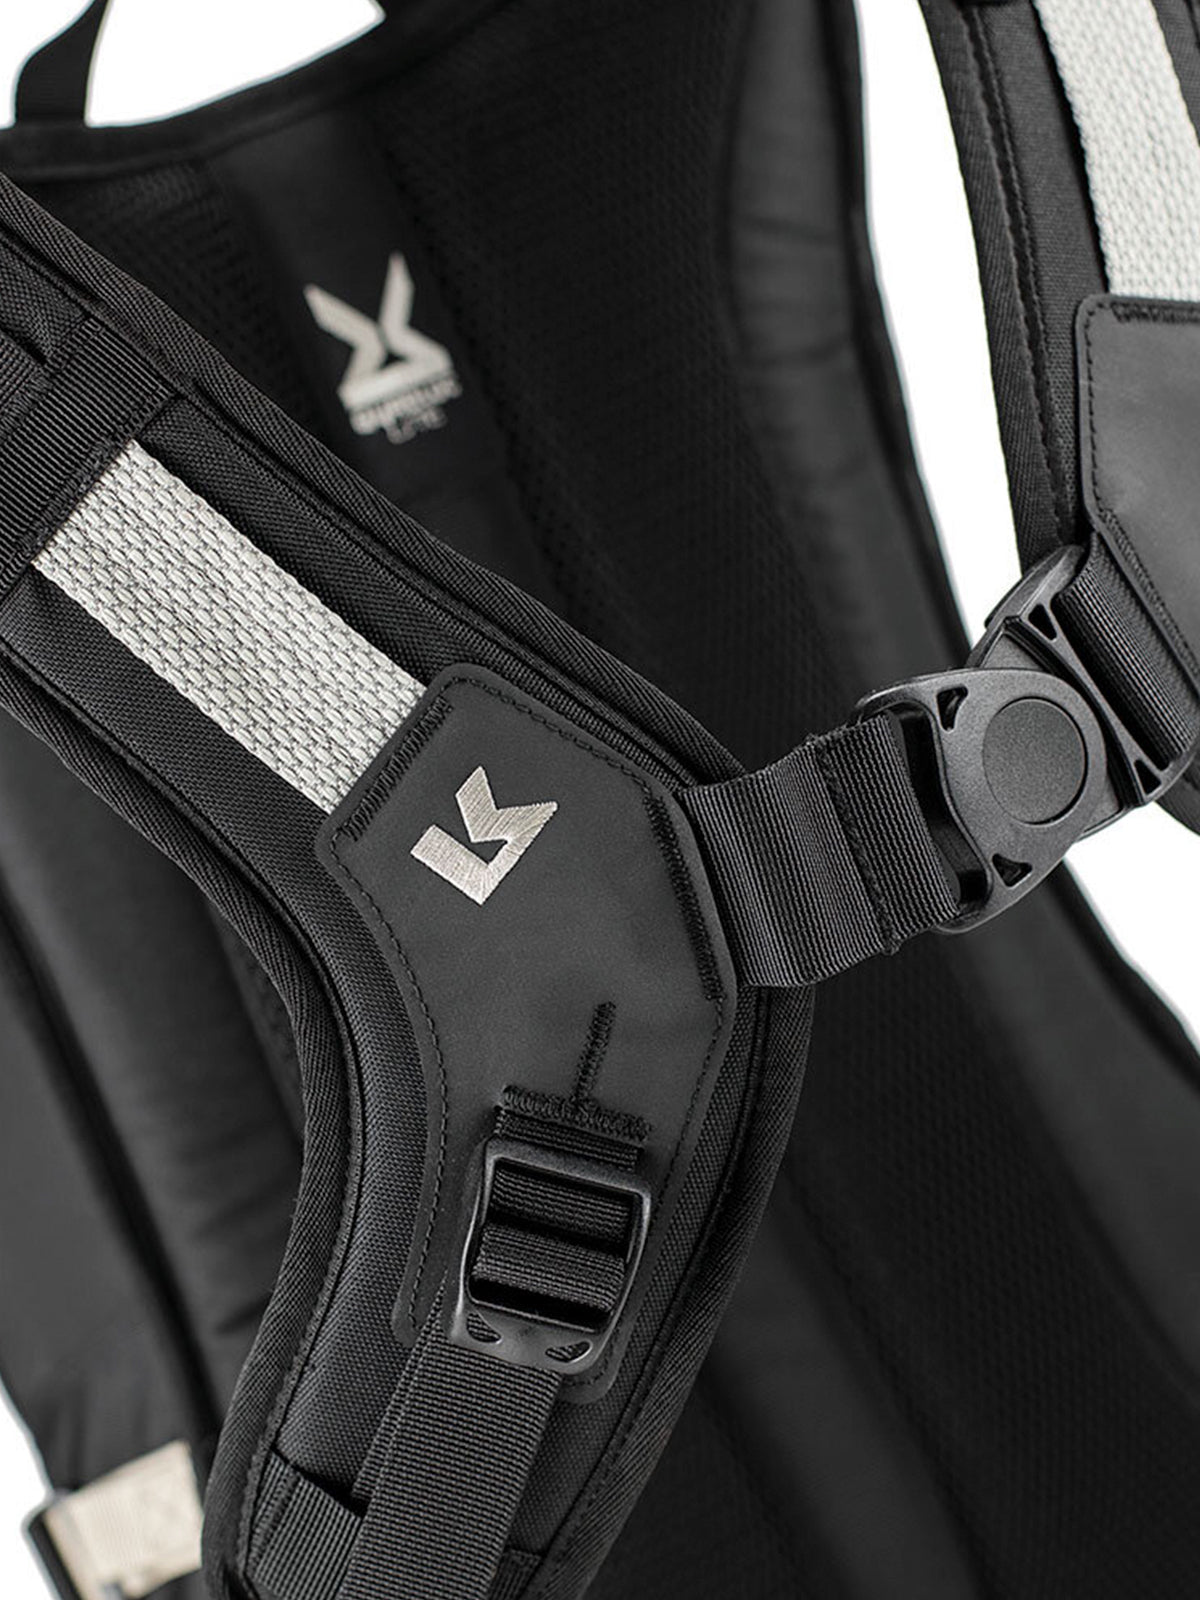 Kriega R20 Backpack harness buckle